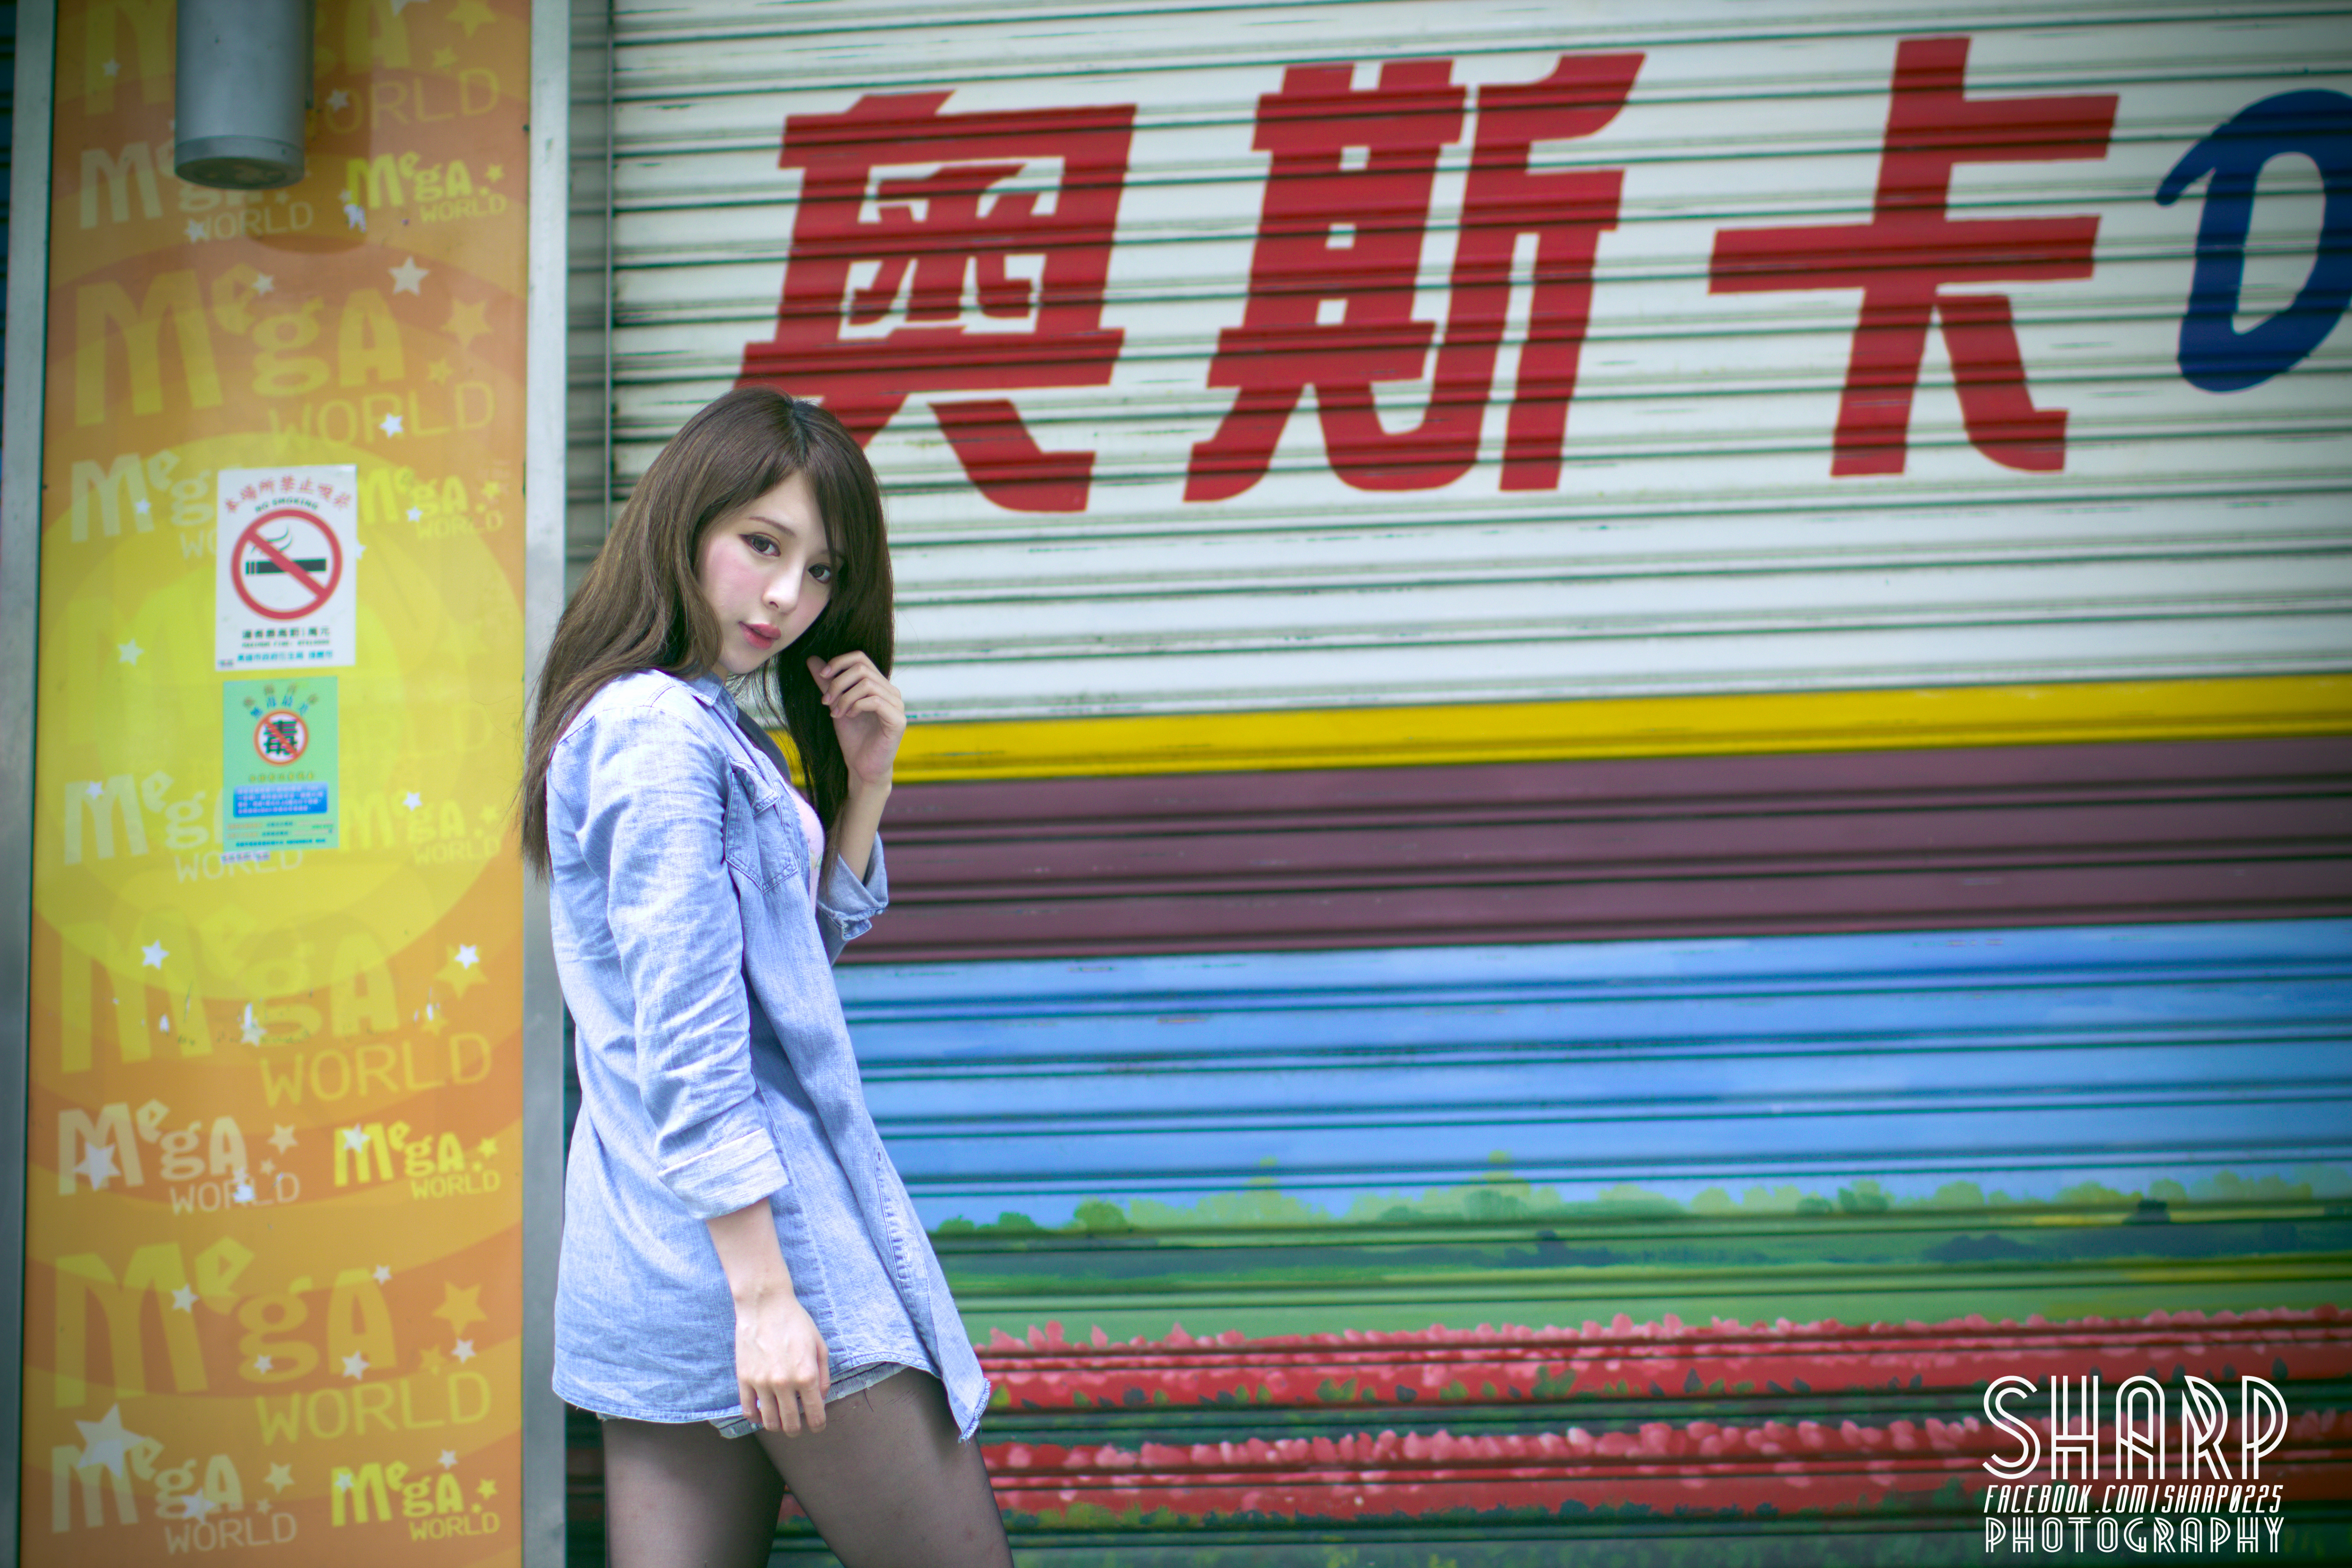 Women Zhang Qi Jun HD Wallpaper | Background Image